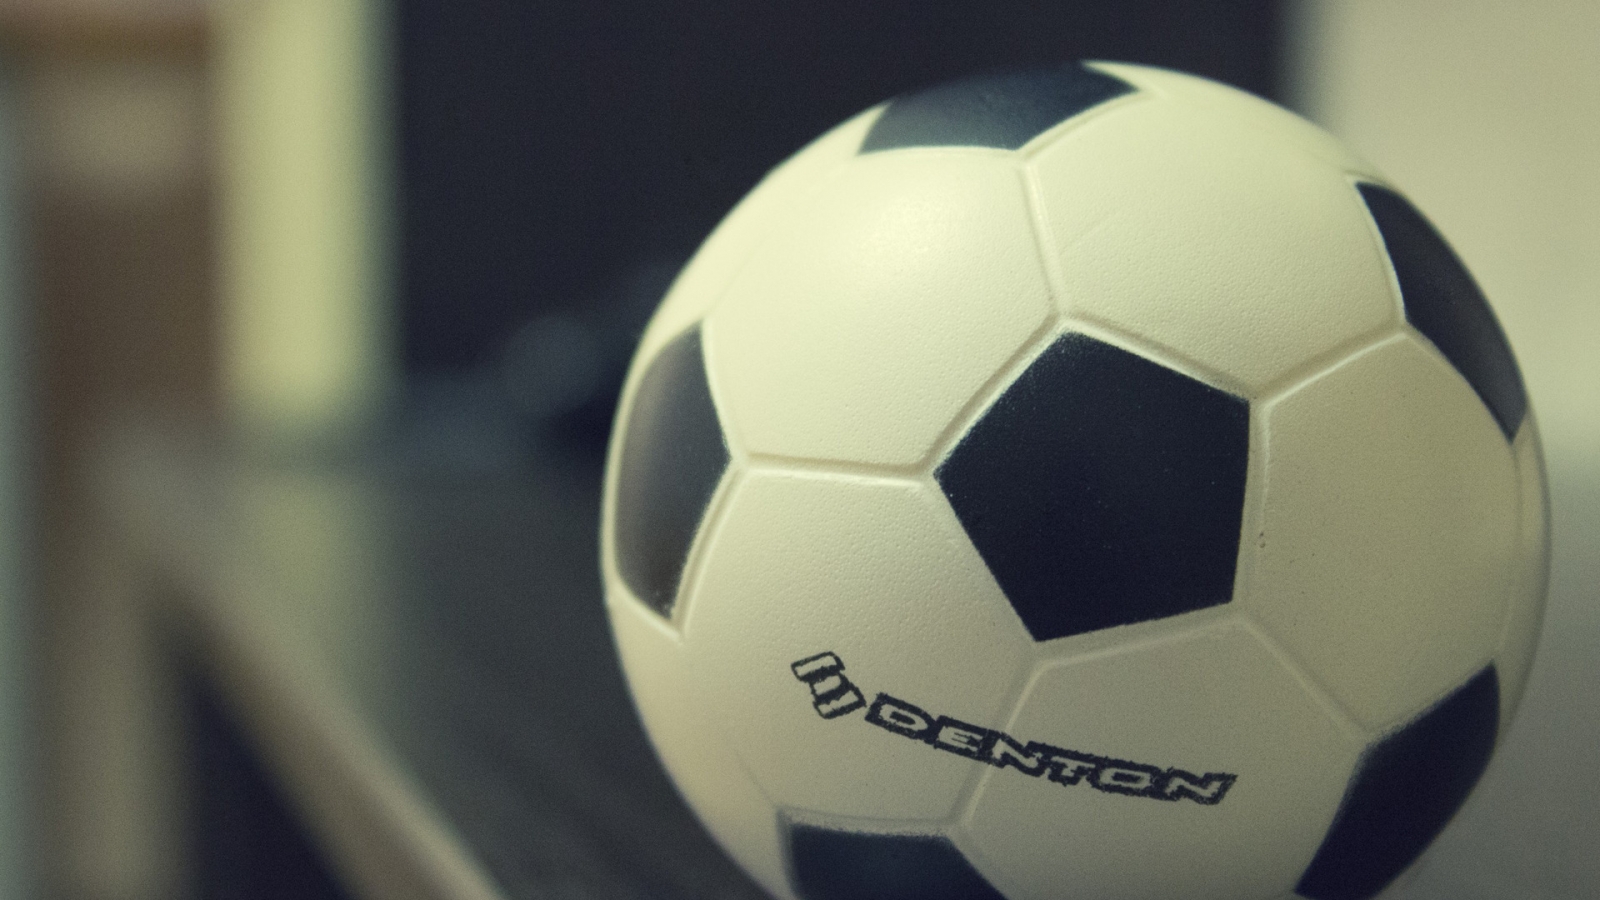 Denton Soccer Ball for 1600 x 900 HDTV resolution